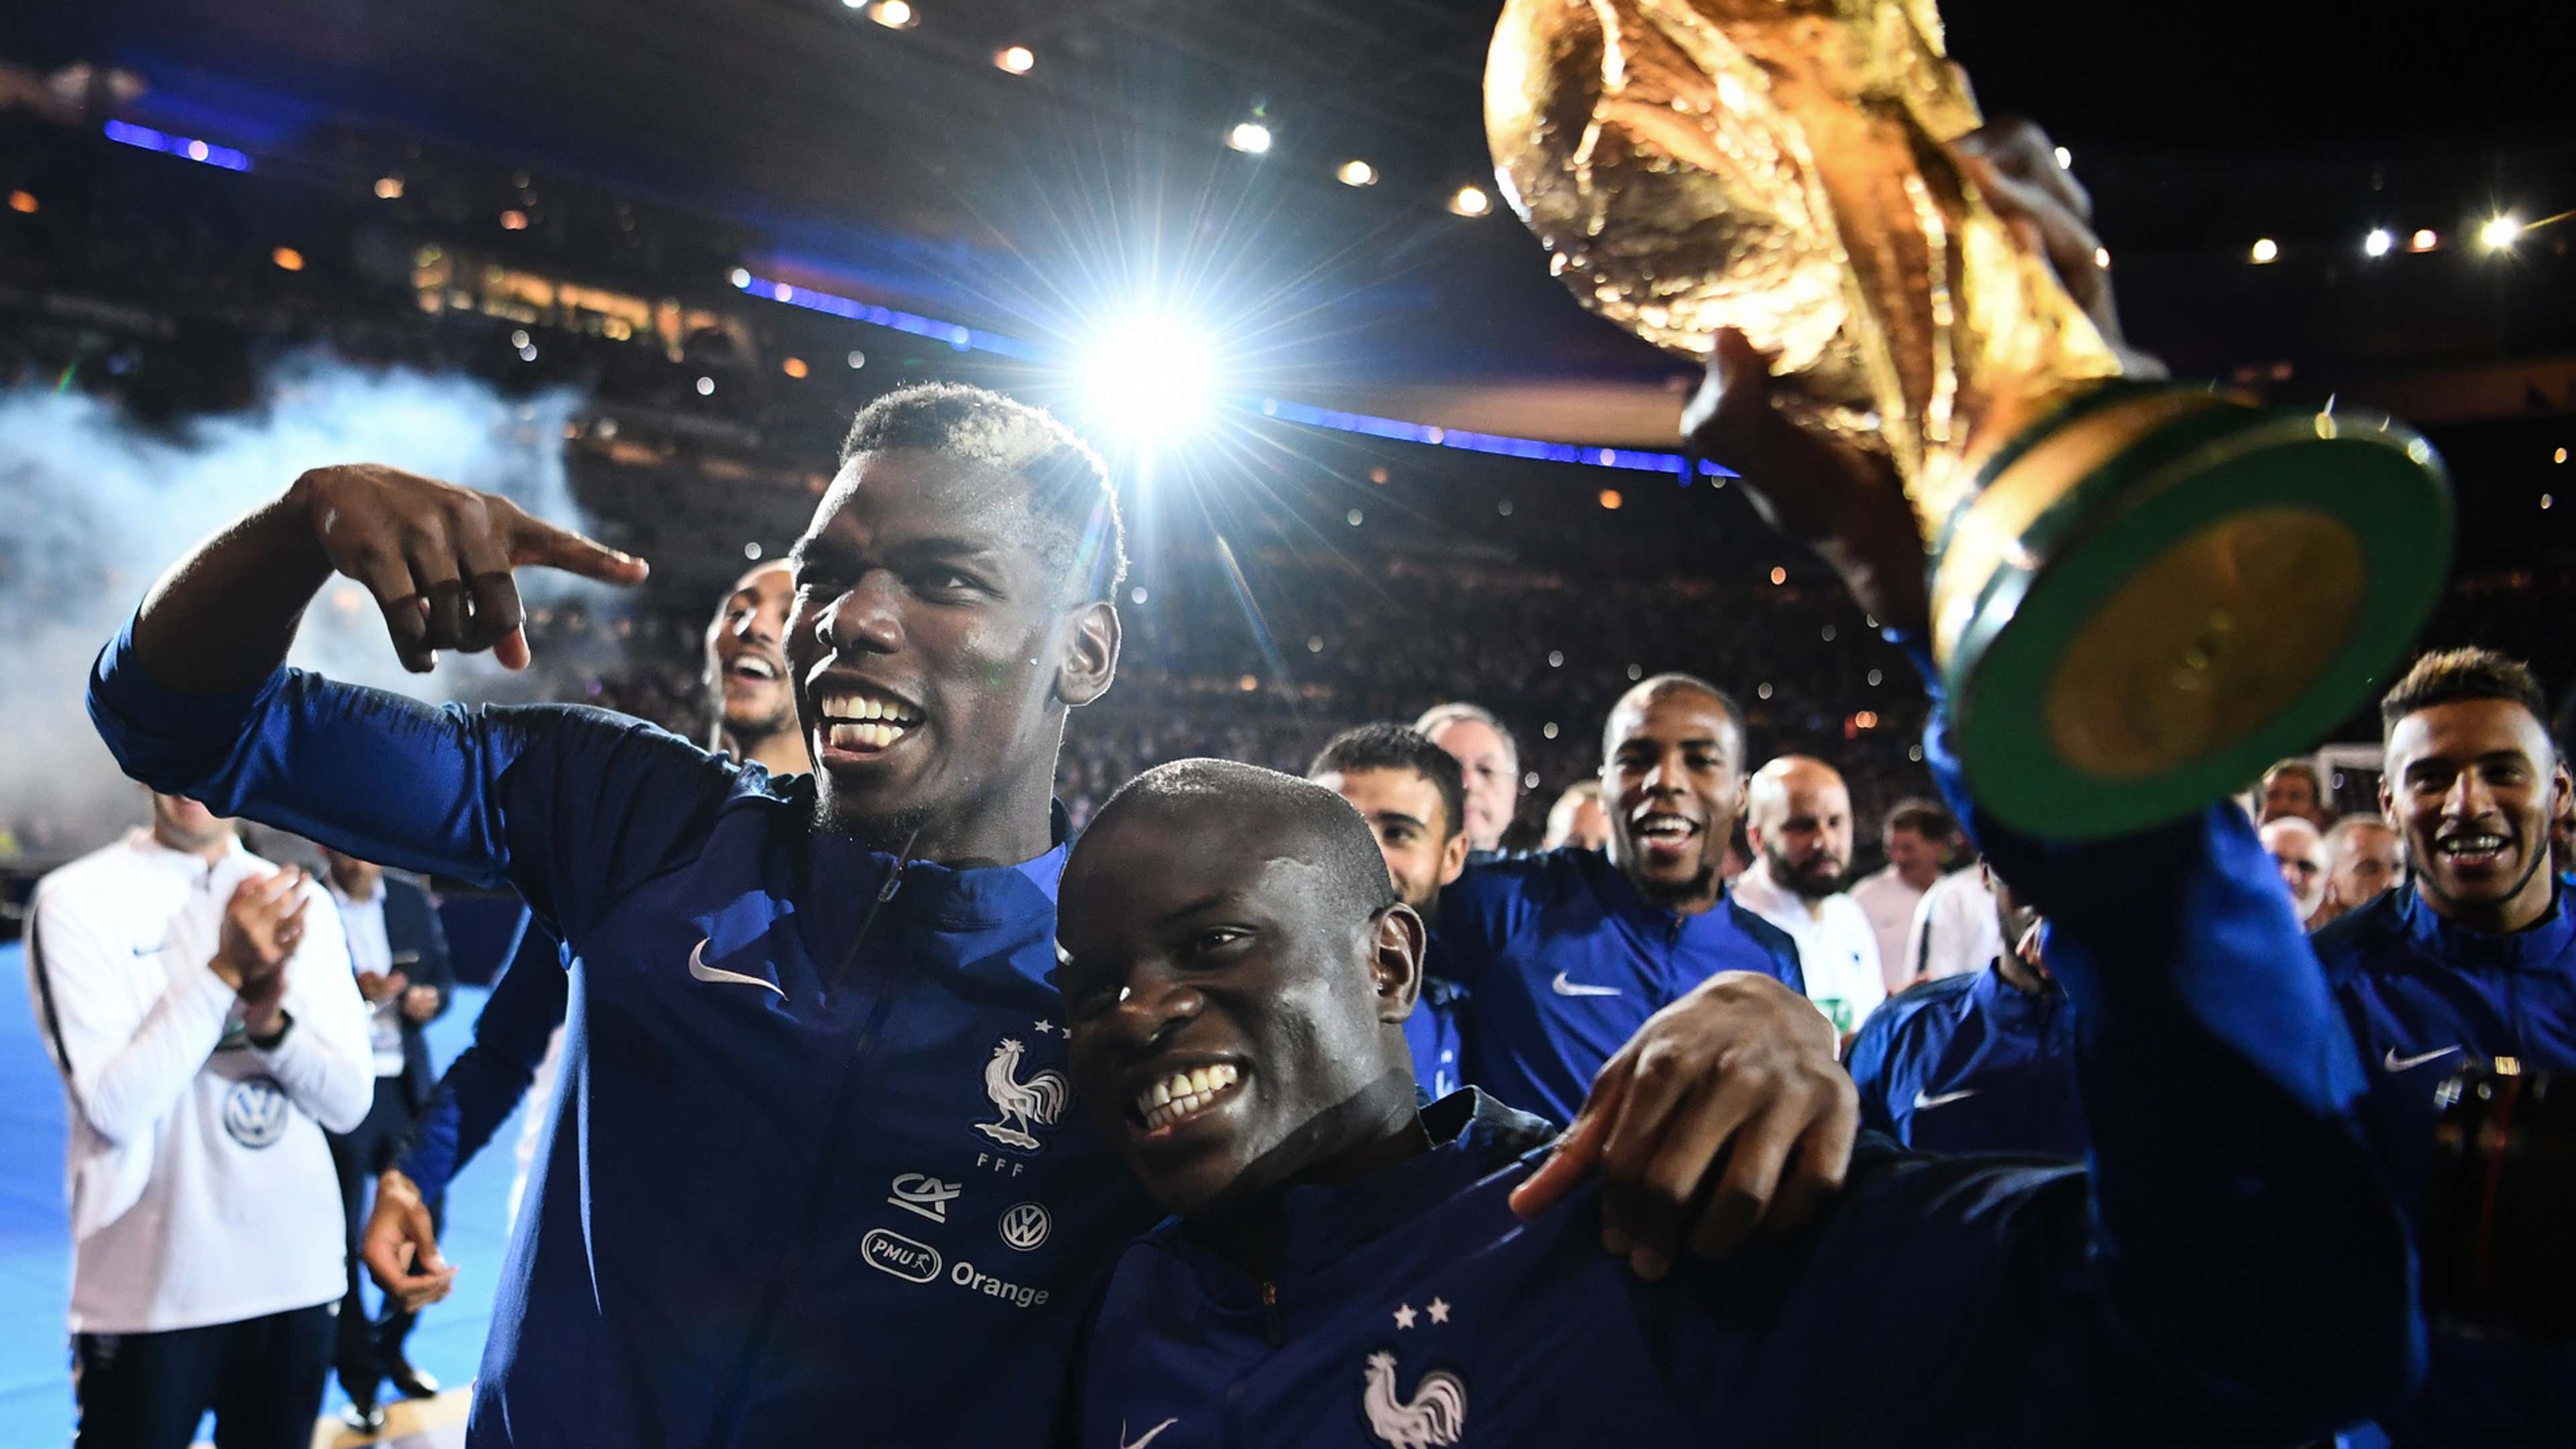 Os jogadores da França campeões da Copa do Mundo de 2018 que estão em 2022